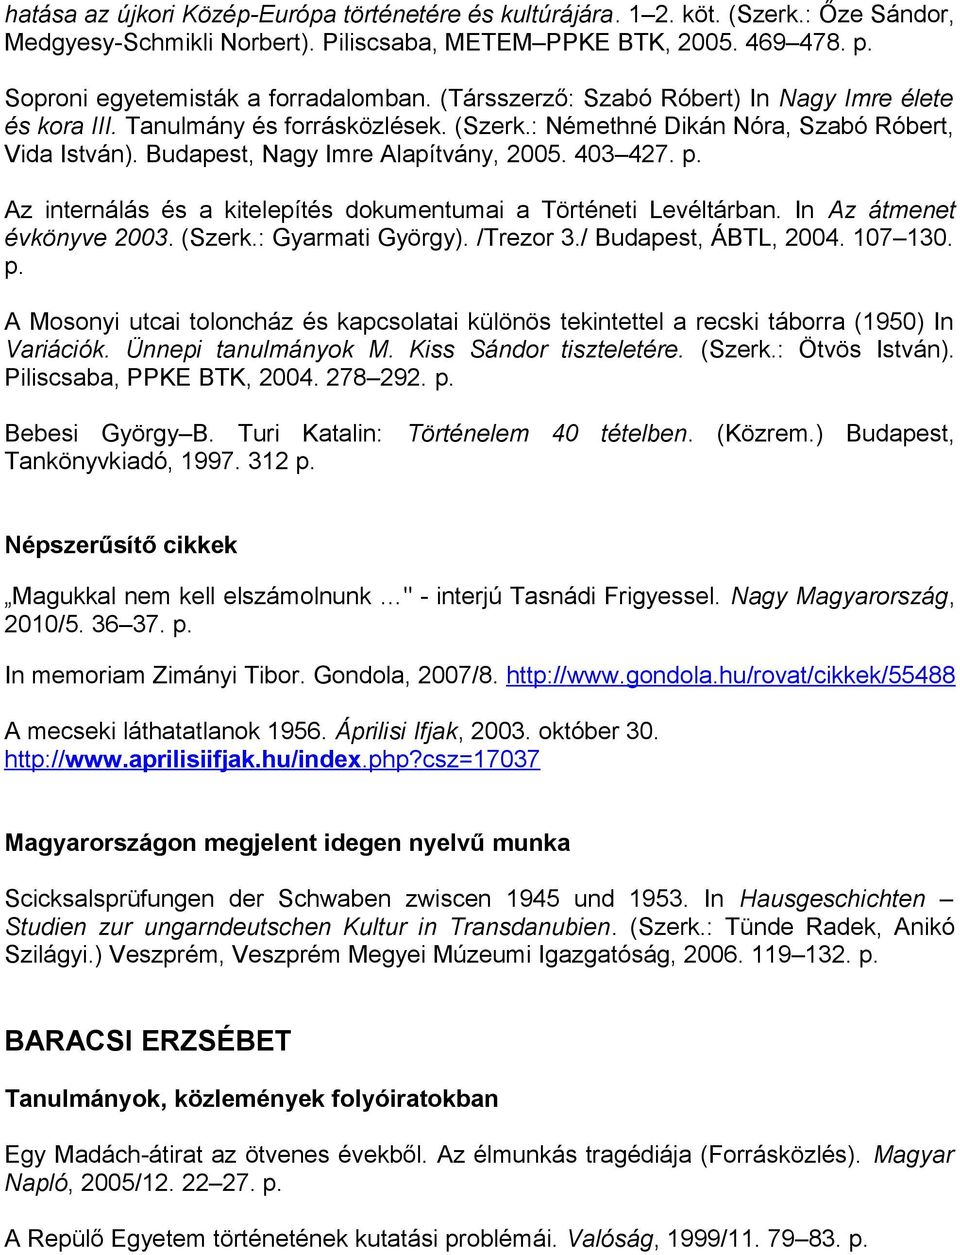 A Levéltár munkatársainak válogatott publikációs jegyzéke - PDF Free  Download